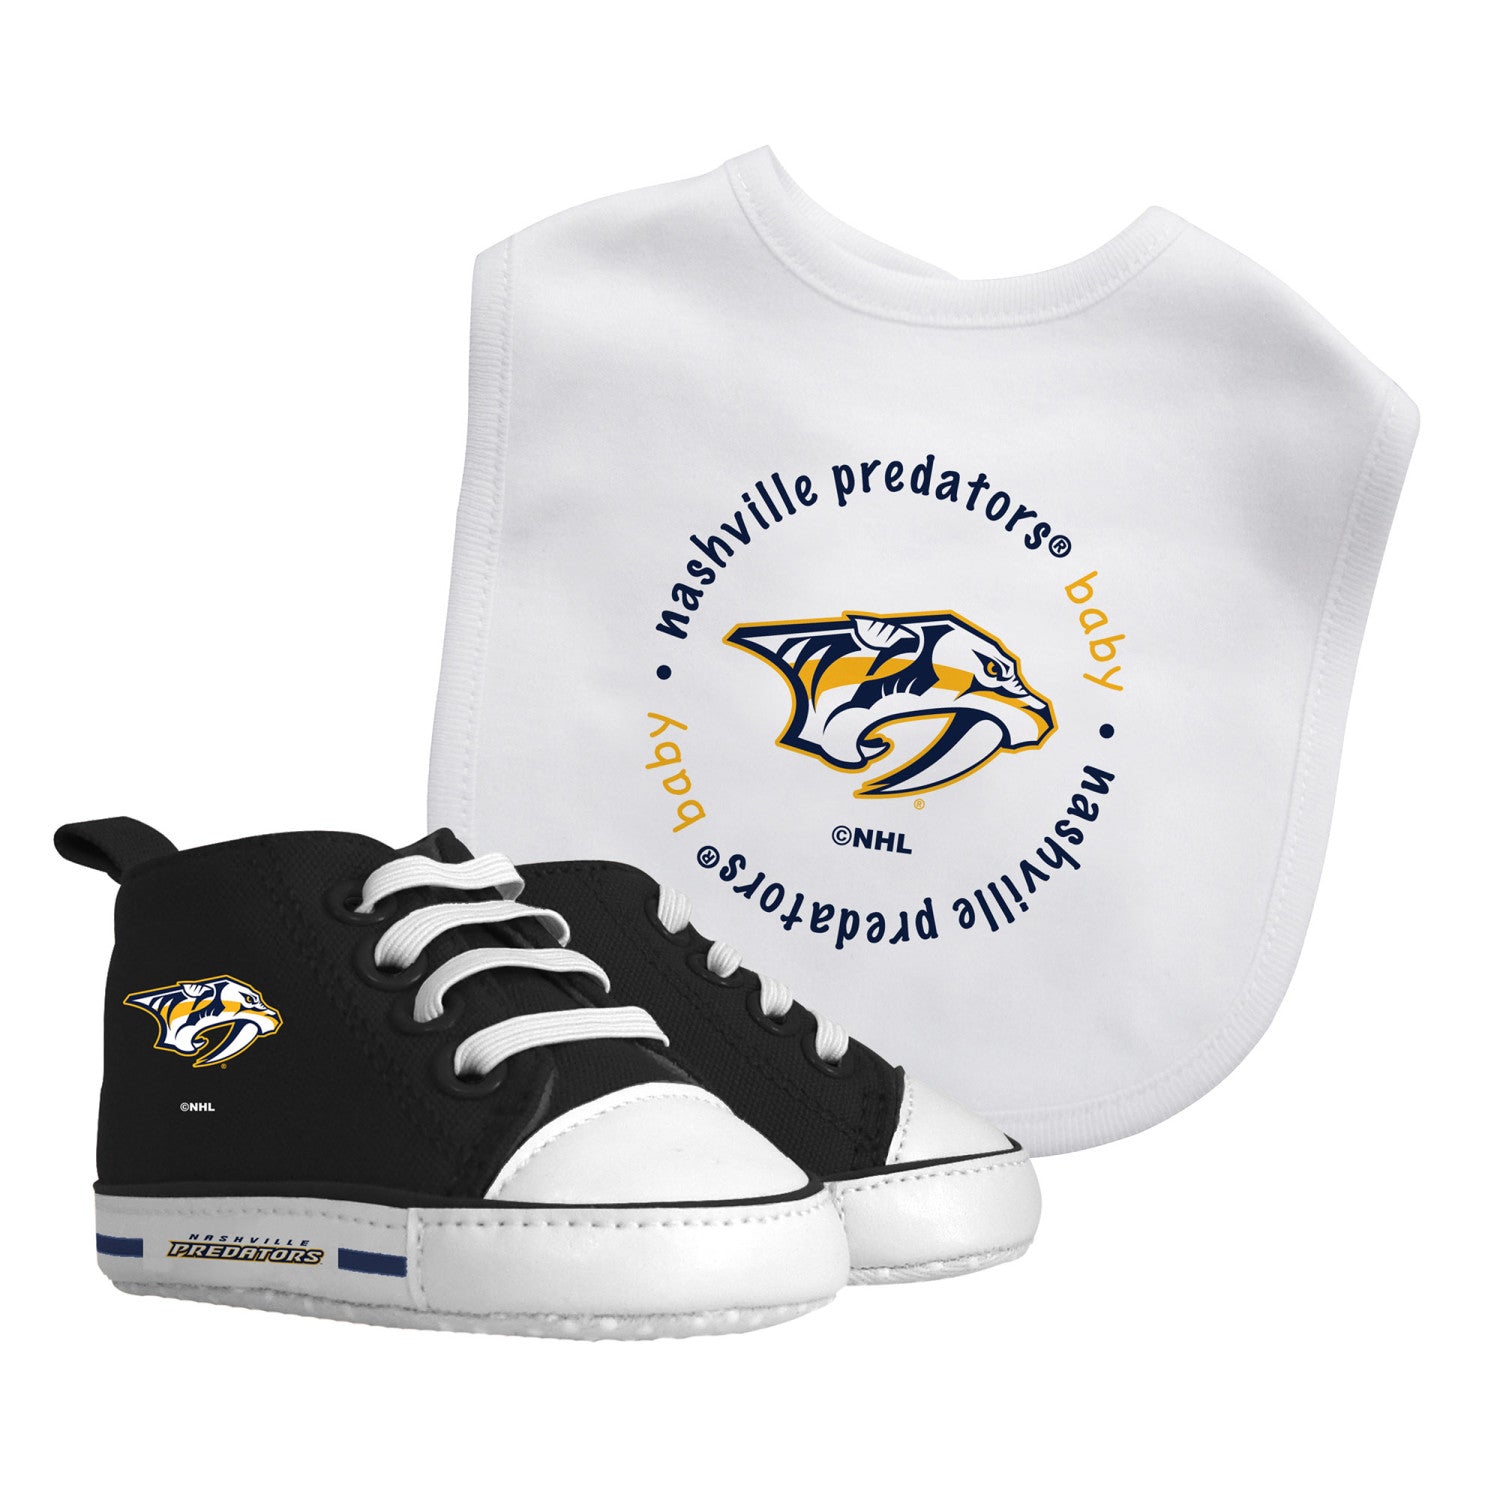 Nashville Predators - 2-Piece Baby Gift Set